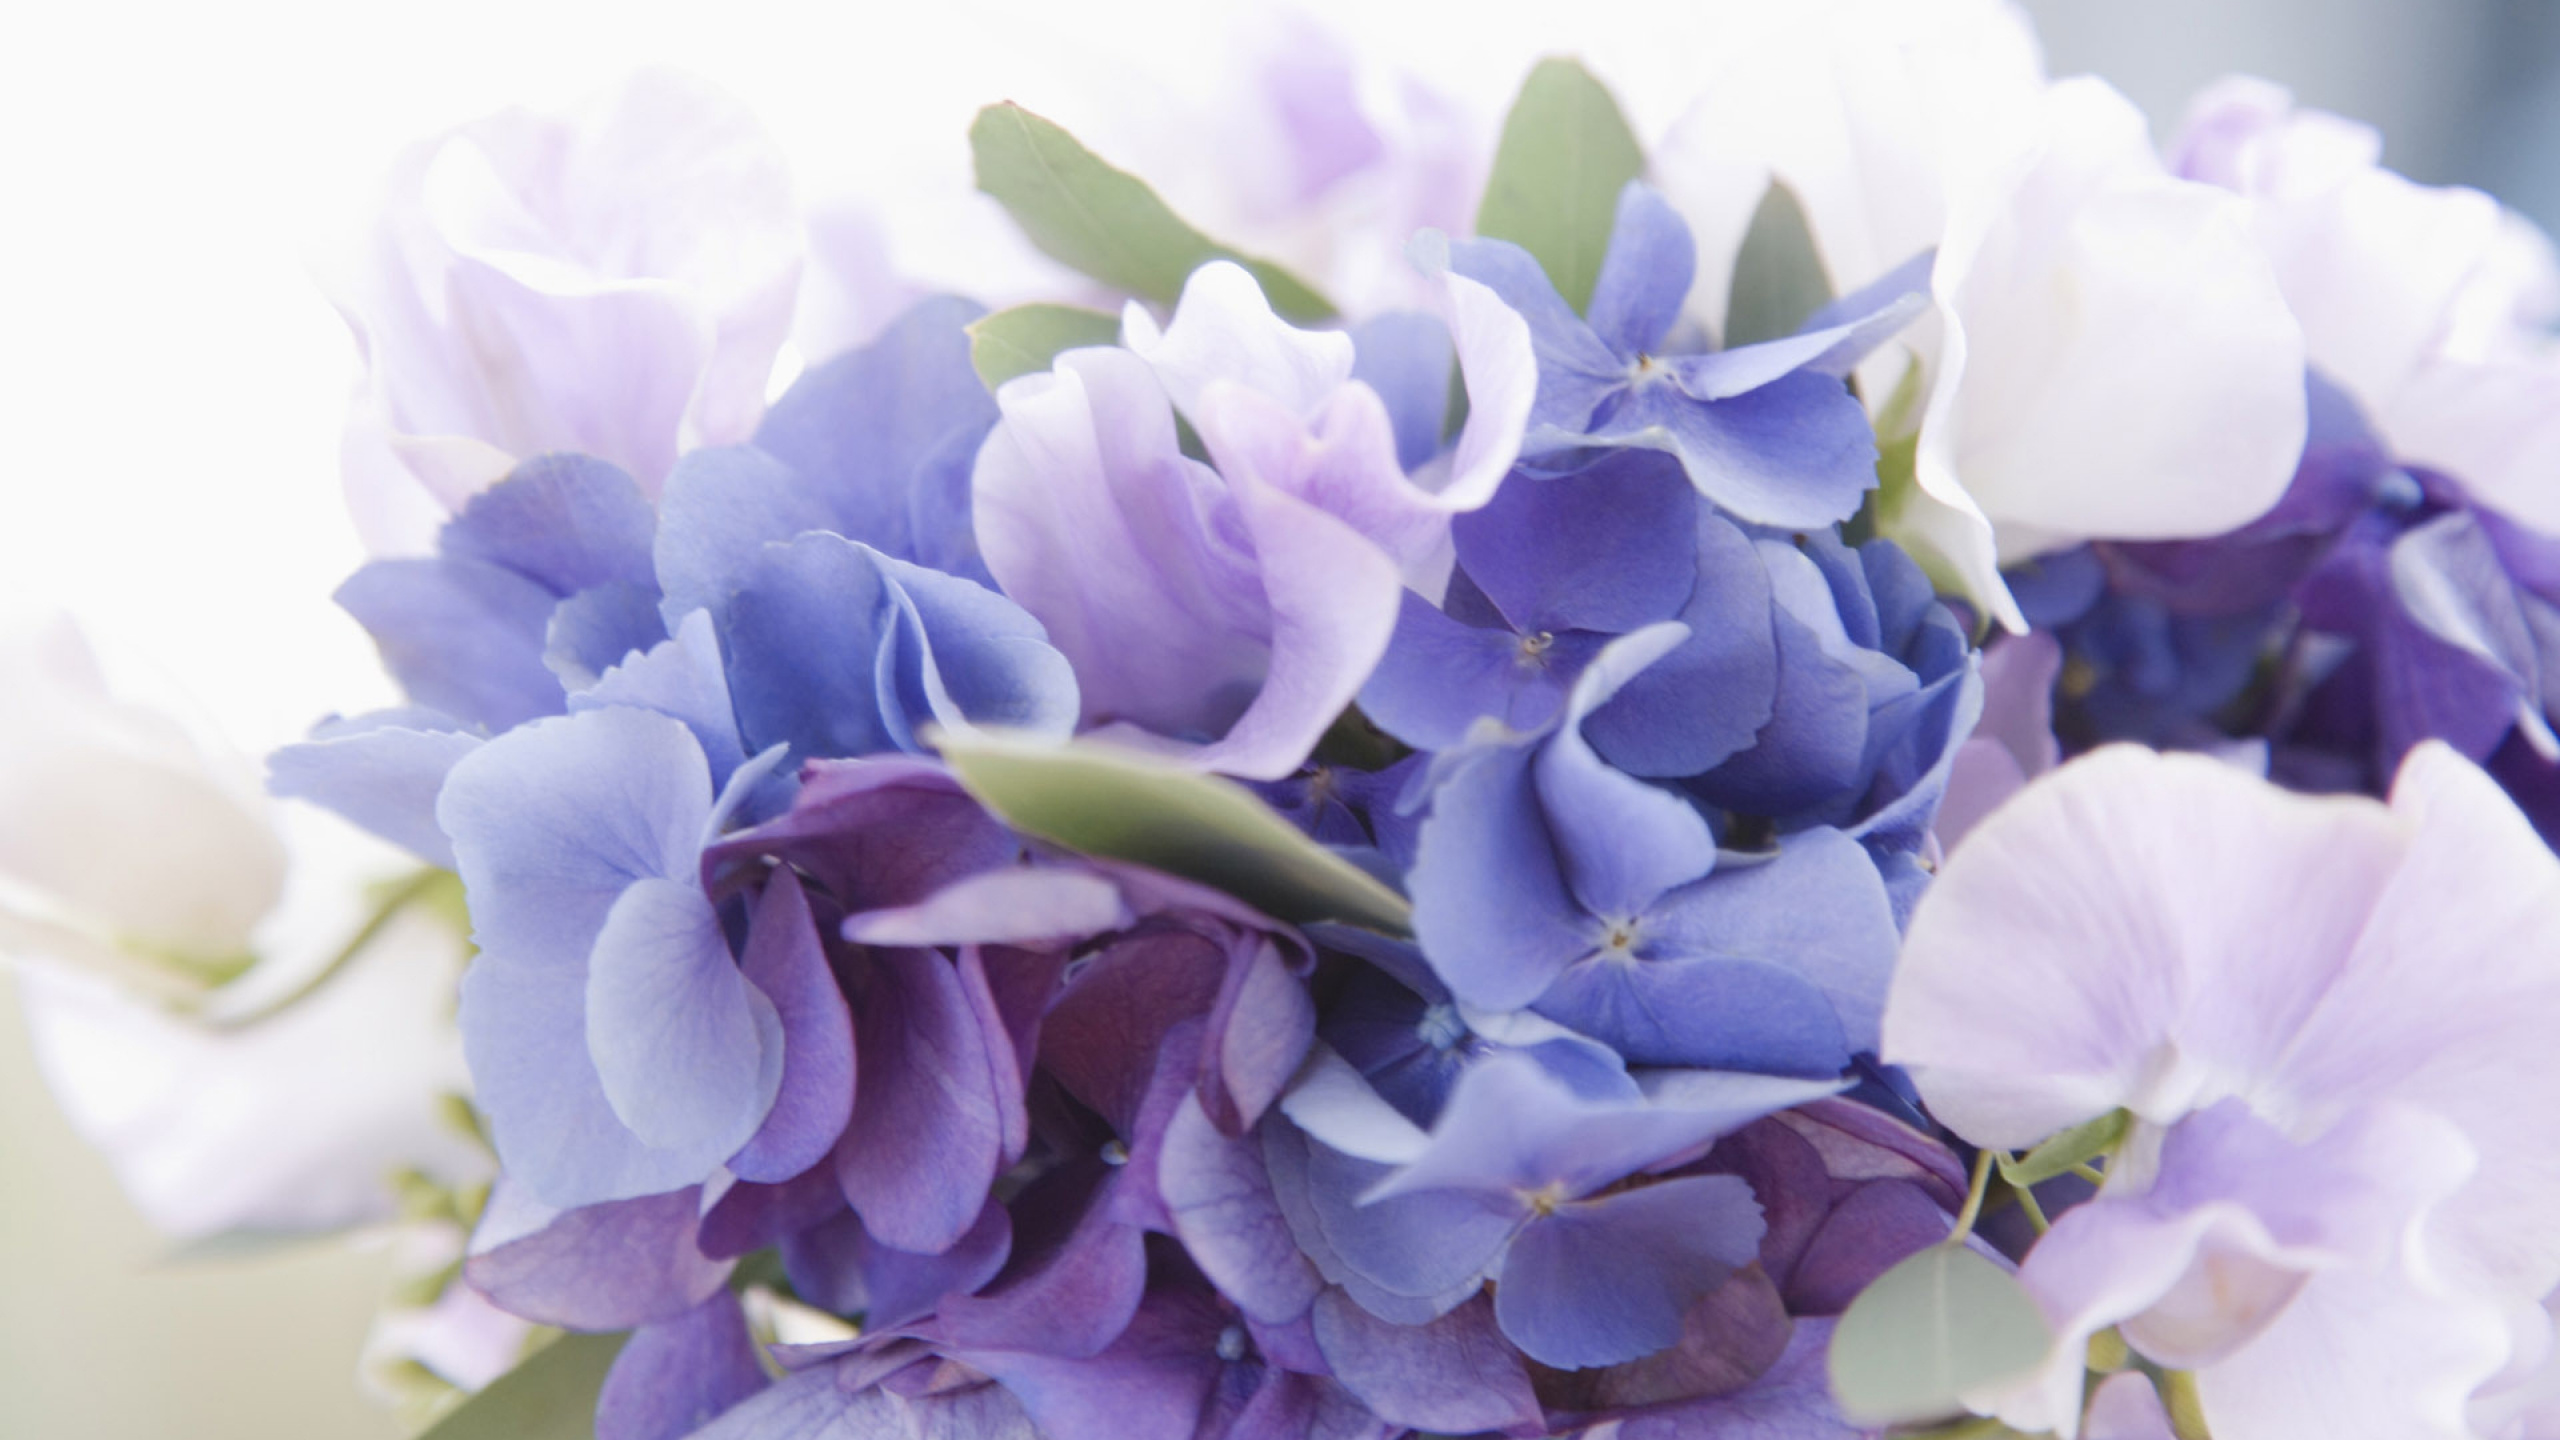 显花植物, 淡紫色的, 紫色的, 紫罗兰色, Hydrangeaceae 壁纸 2560x1440 允许